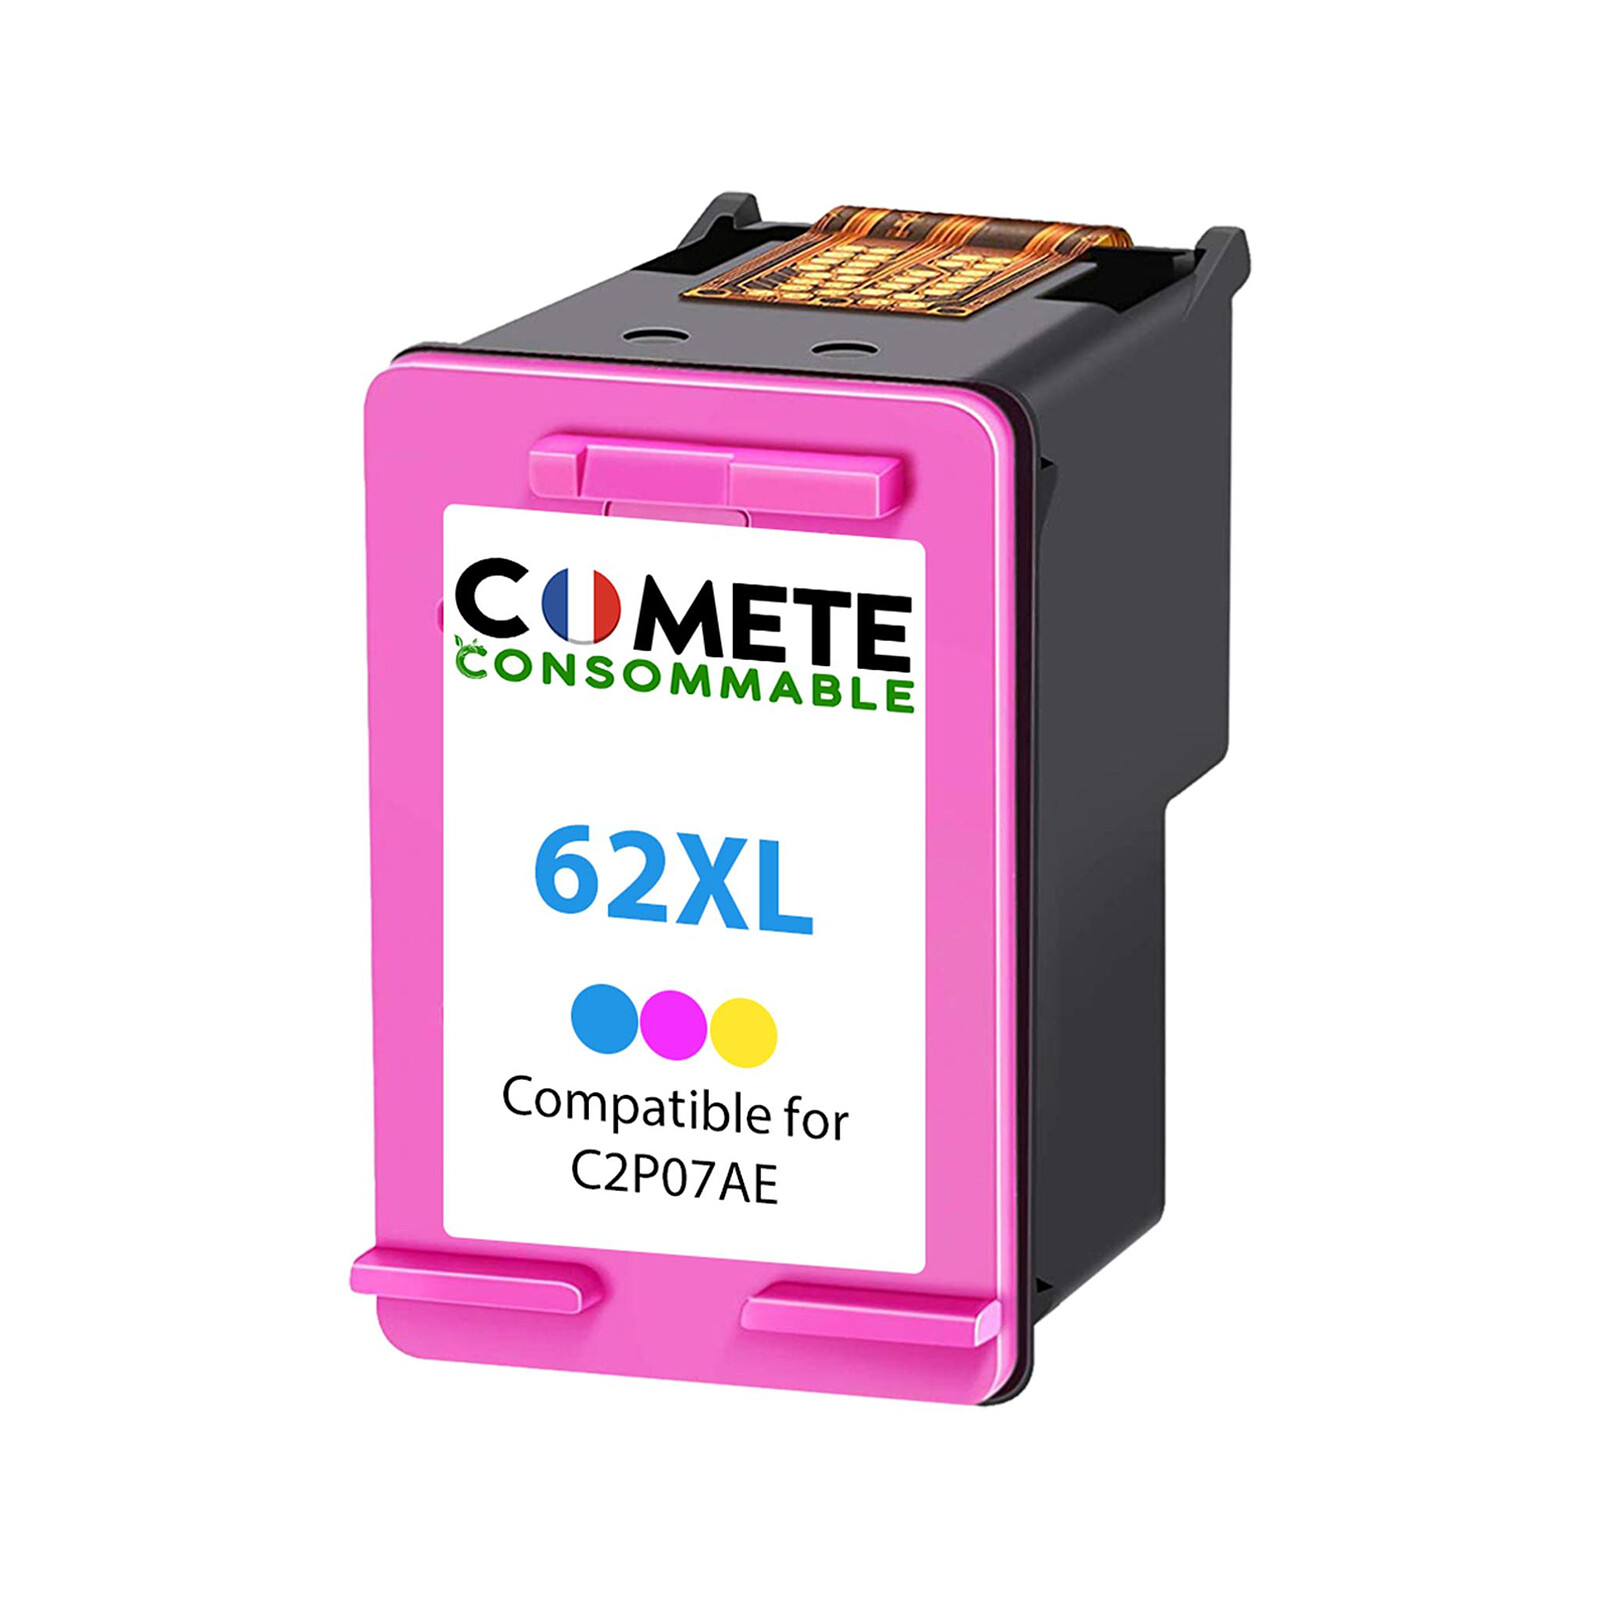 COMETE - 62XL - 2 Cartouches compatibles HP 62XL - 1 Noir + 1 Couleurs -  Marque française - Cartouche imprimante - LDLC